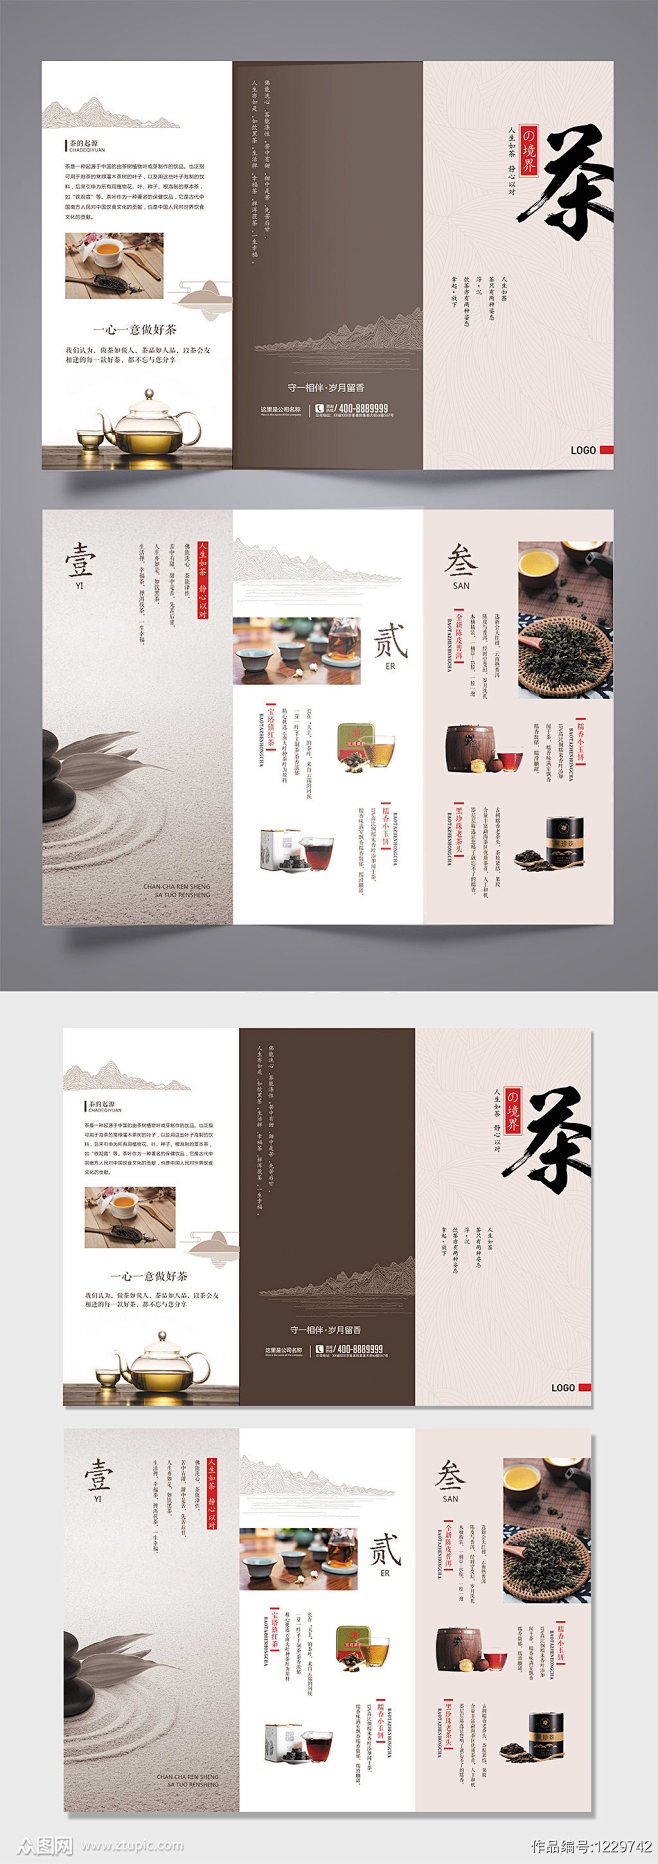 中式中国式茶文化三折页素材